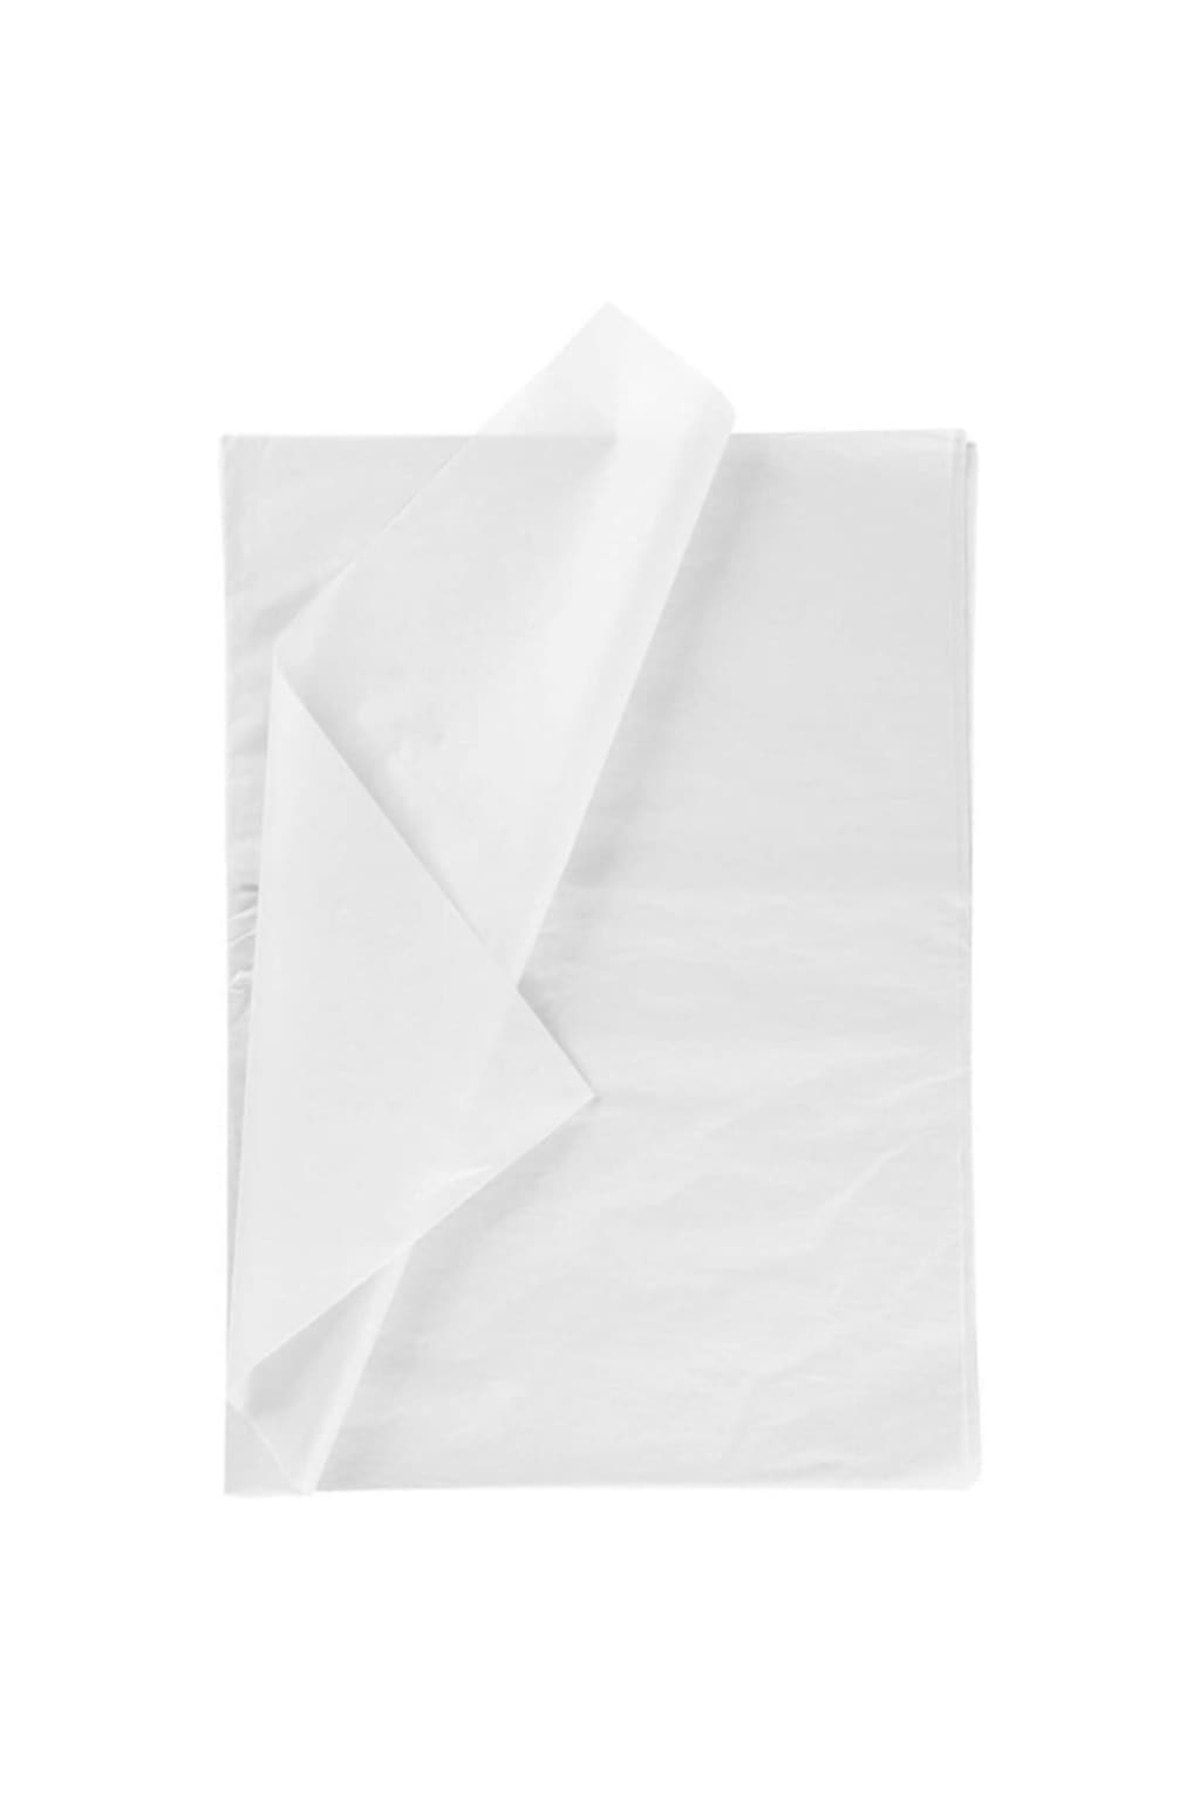 Master 100 Adet 50x70 Cm Pelur Kağıt Hediye Paketleme Ambalaj Kağıdı